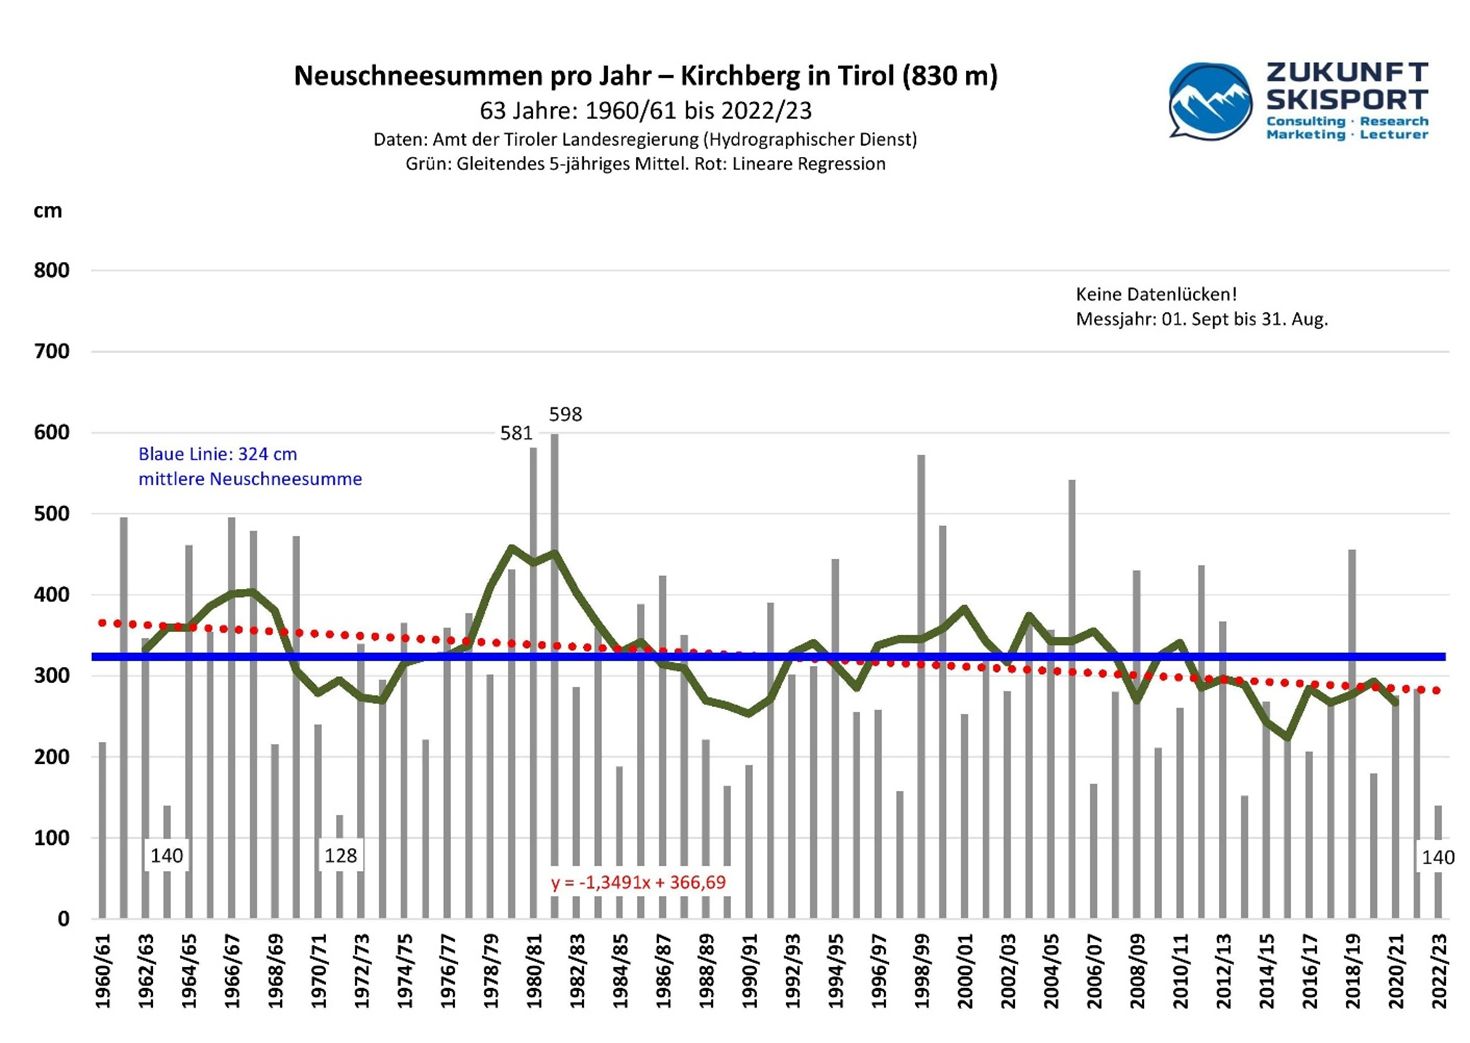 Abb. 3: Die Summe der täglichen Neuschneehöhen pro Jahr in Kirchberg in Tirol von 1960/61 bis 2022/23. Daten: Amt der Tiroler Landesregierung (Hydrographischer Dienst). Stand: 16.03.2023